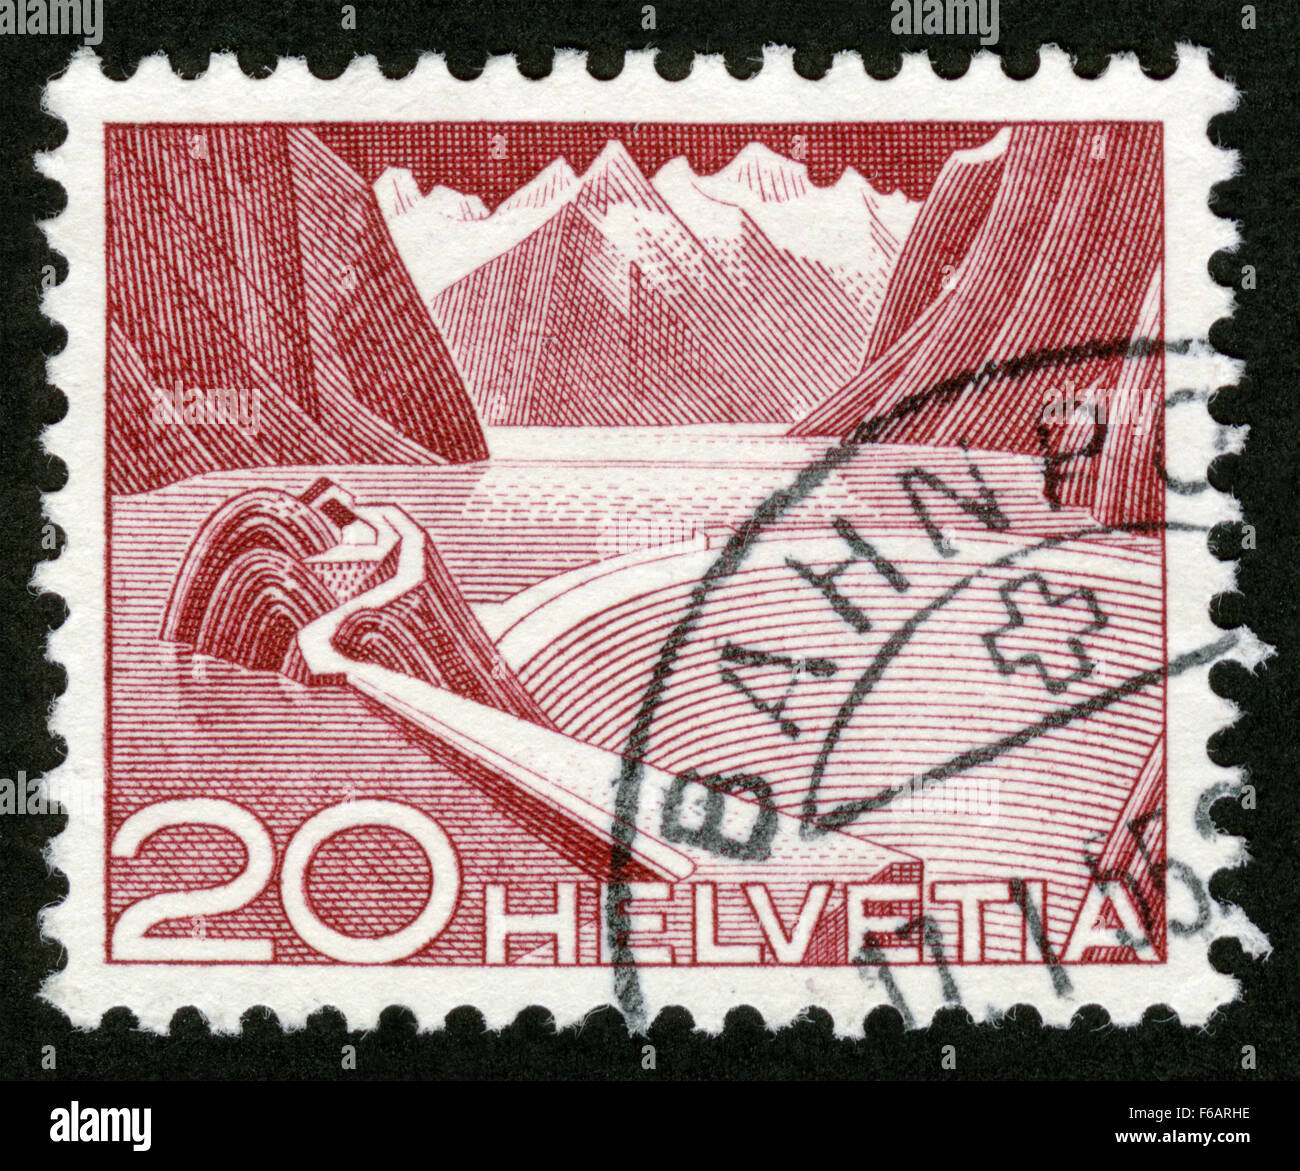 La Suisse, post mark,paysage,timbres Banque D'Images